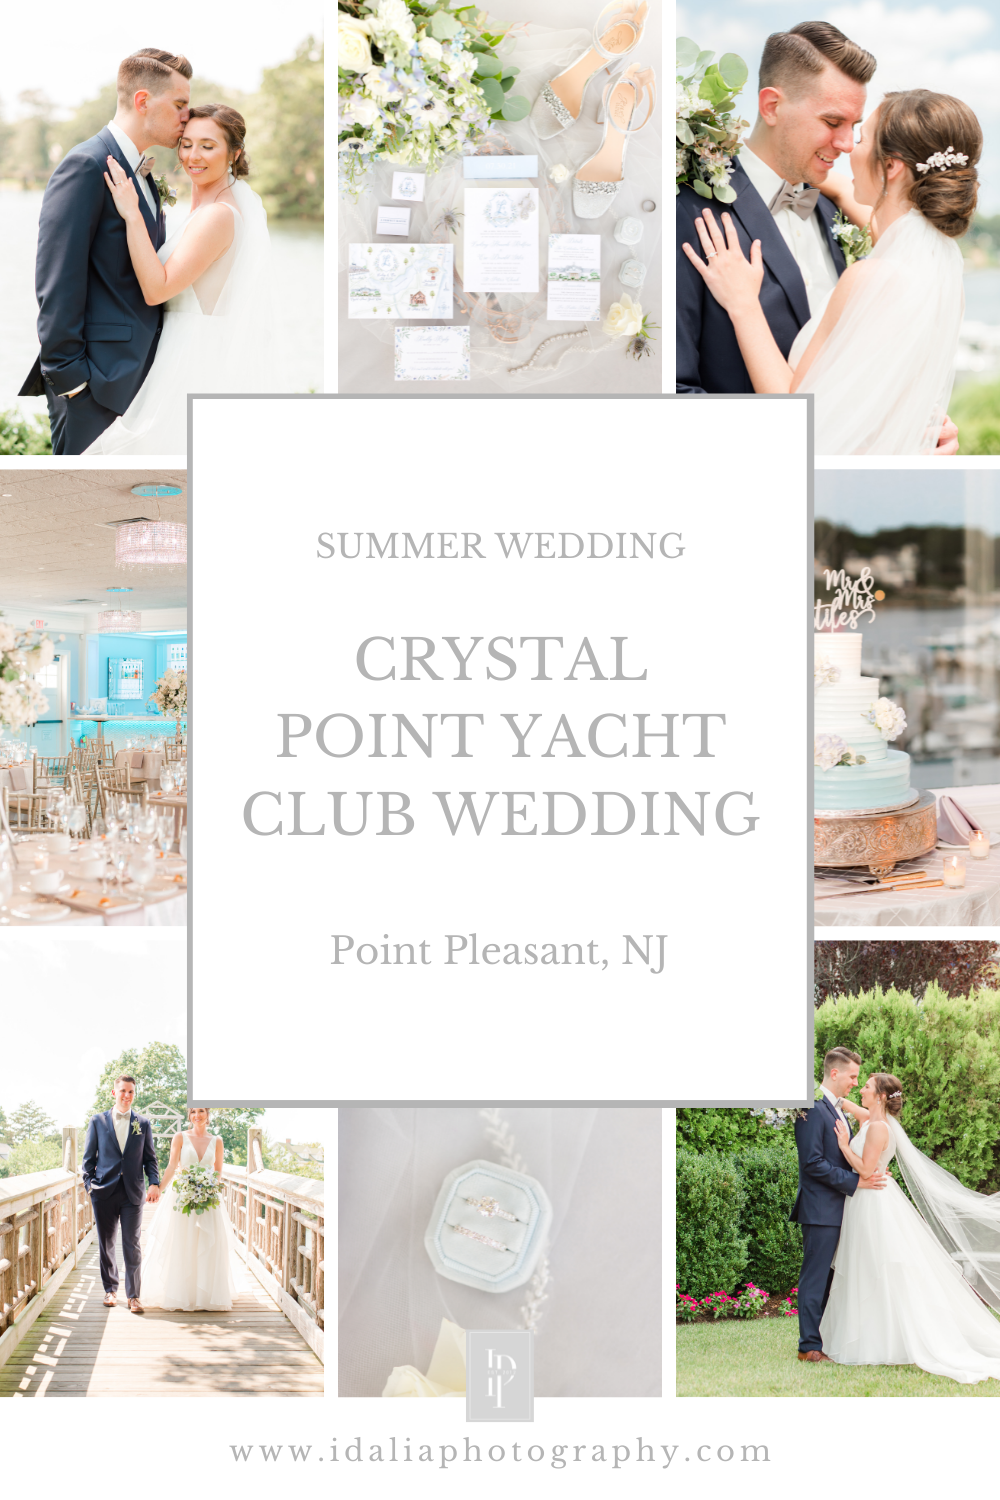 Crystal Point Yacht Club wedding in Point Pleasant NJ 